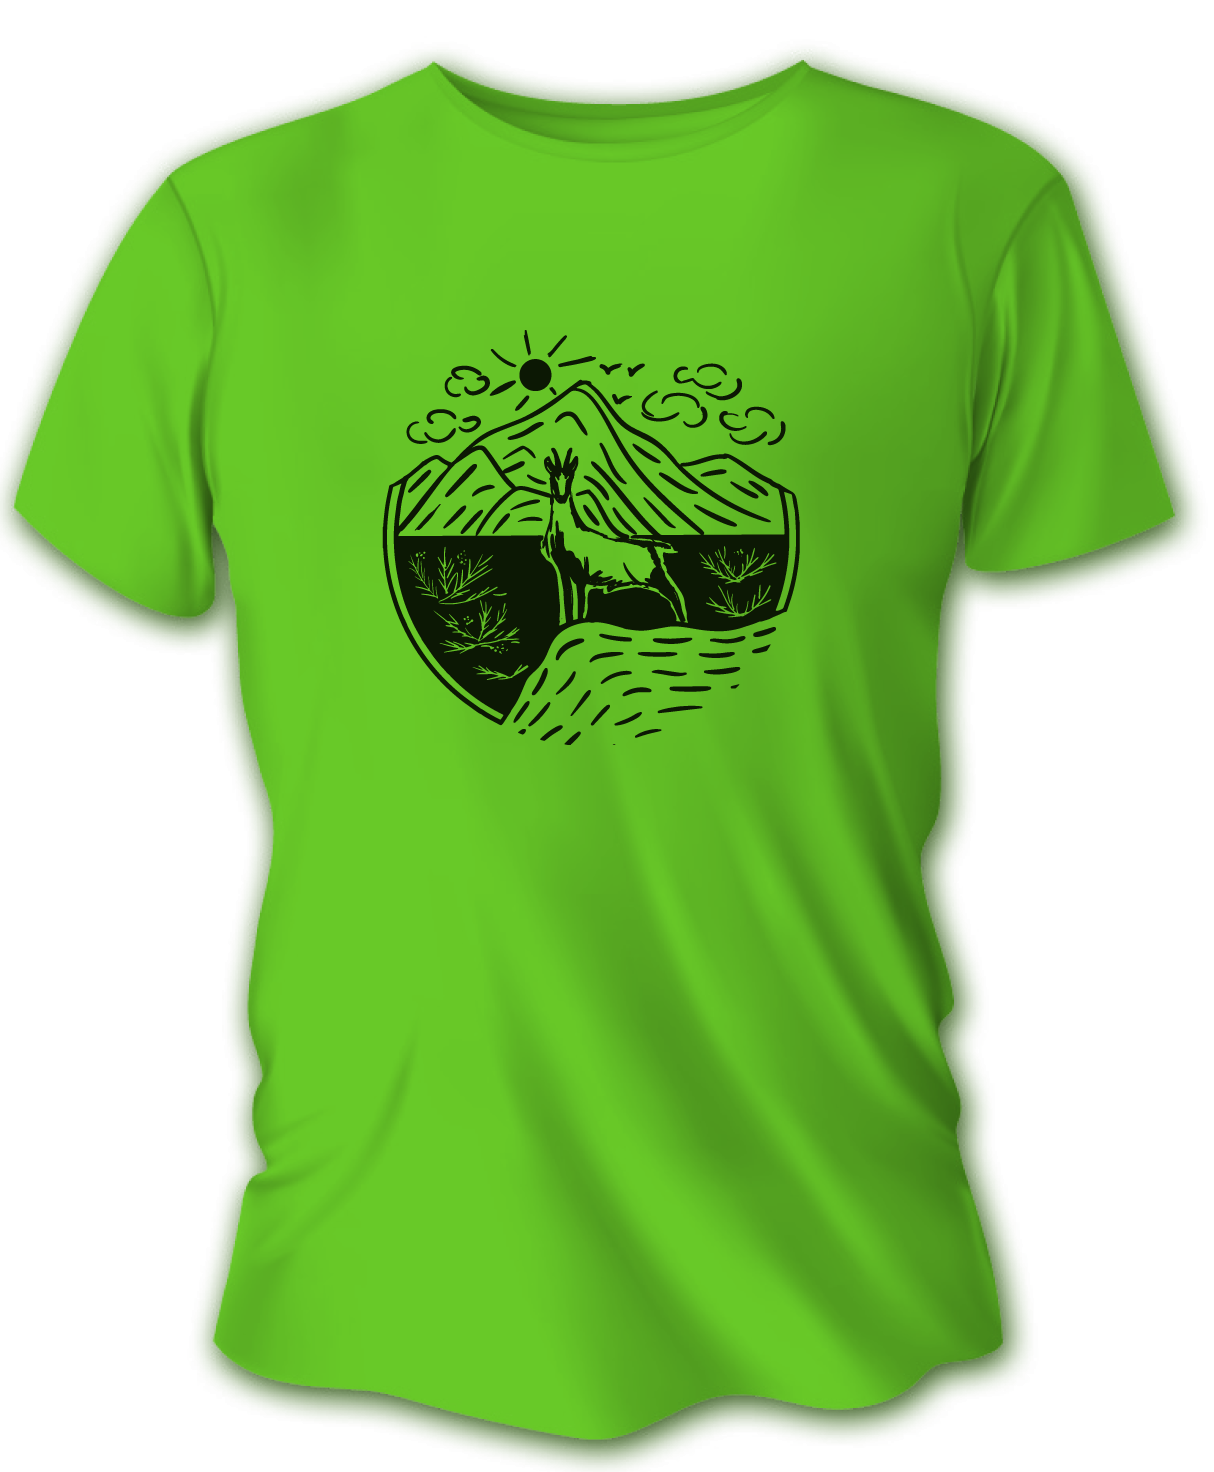 Pánske poľovnícke tričko TETRAO kamzík - bledozelené   L